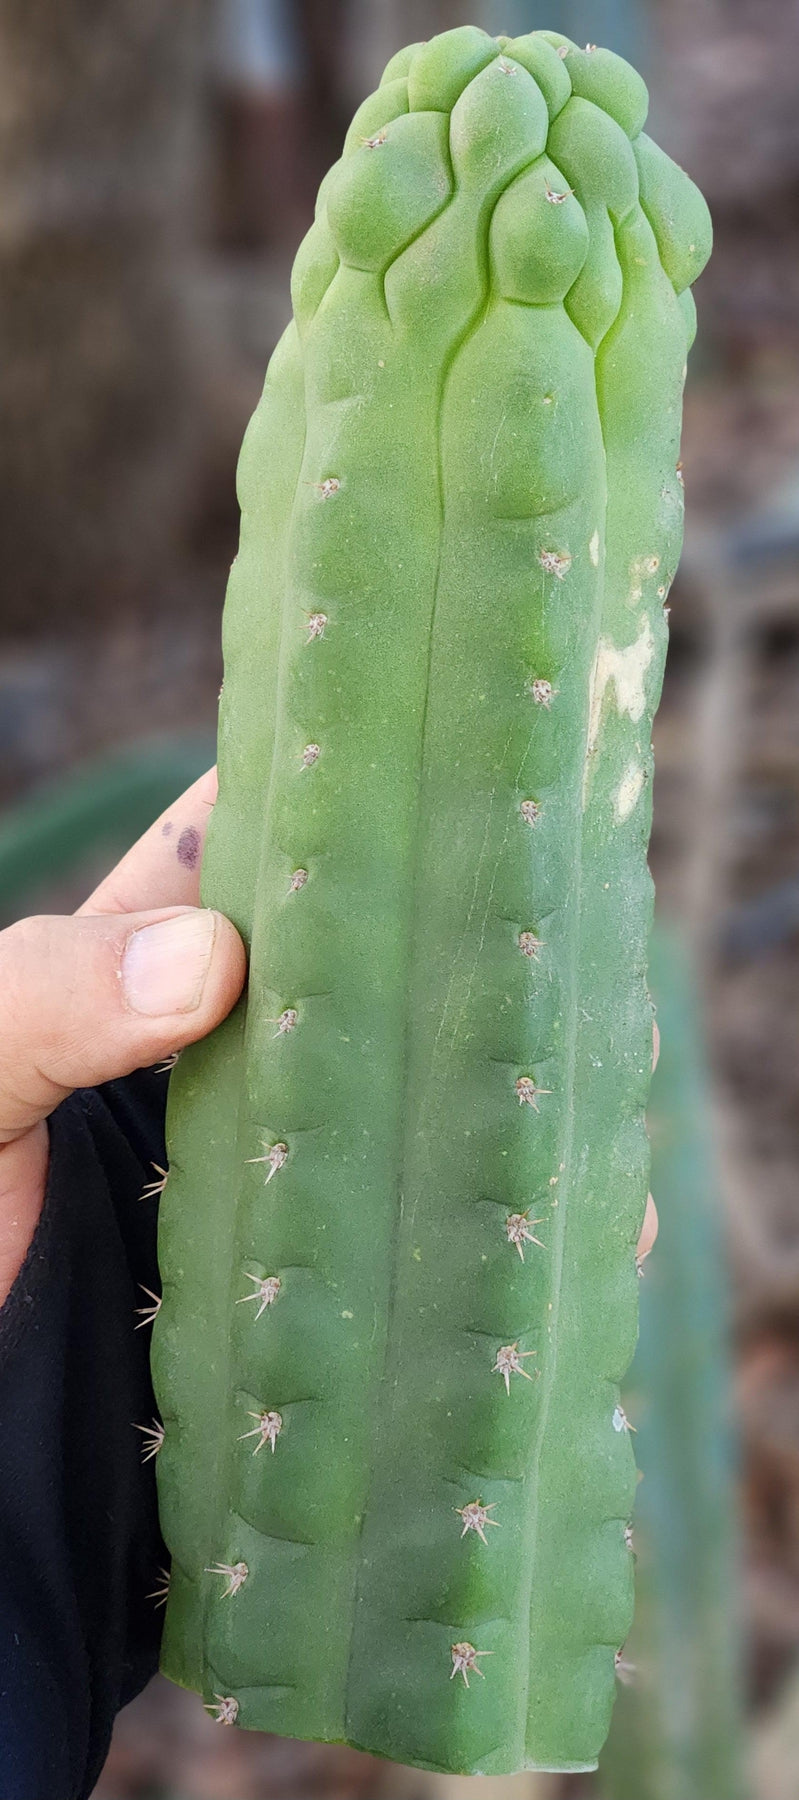 #EC144 EXACT Trichocereus Pachanoi Monstrose TPM Cactus Cutting